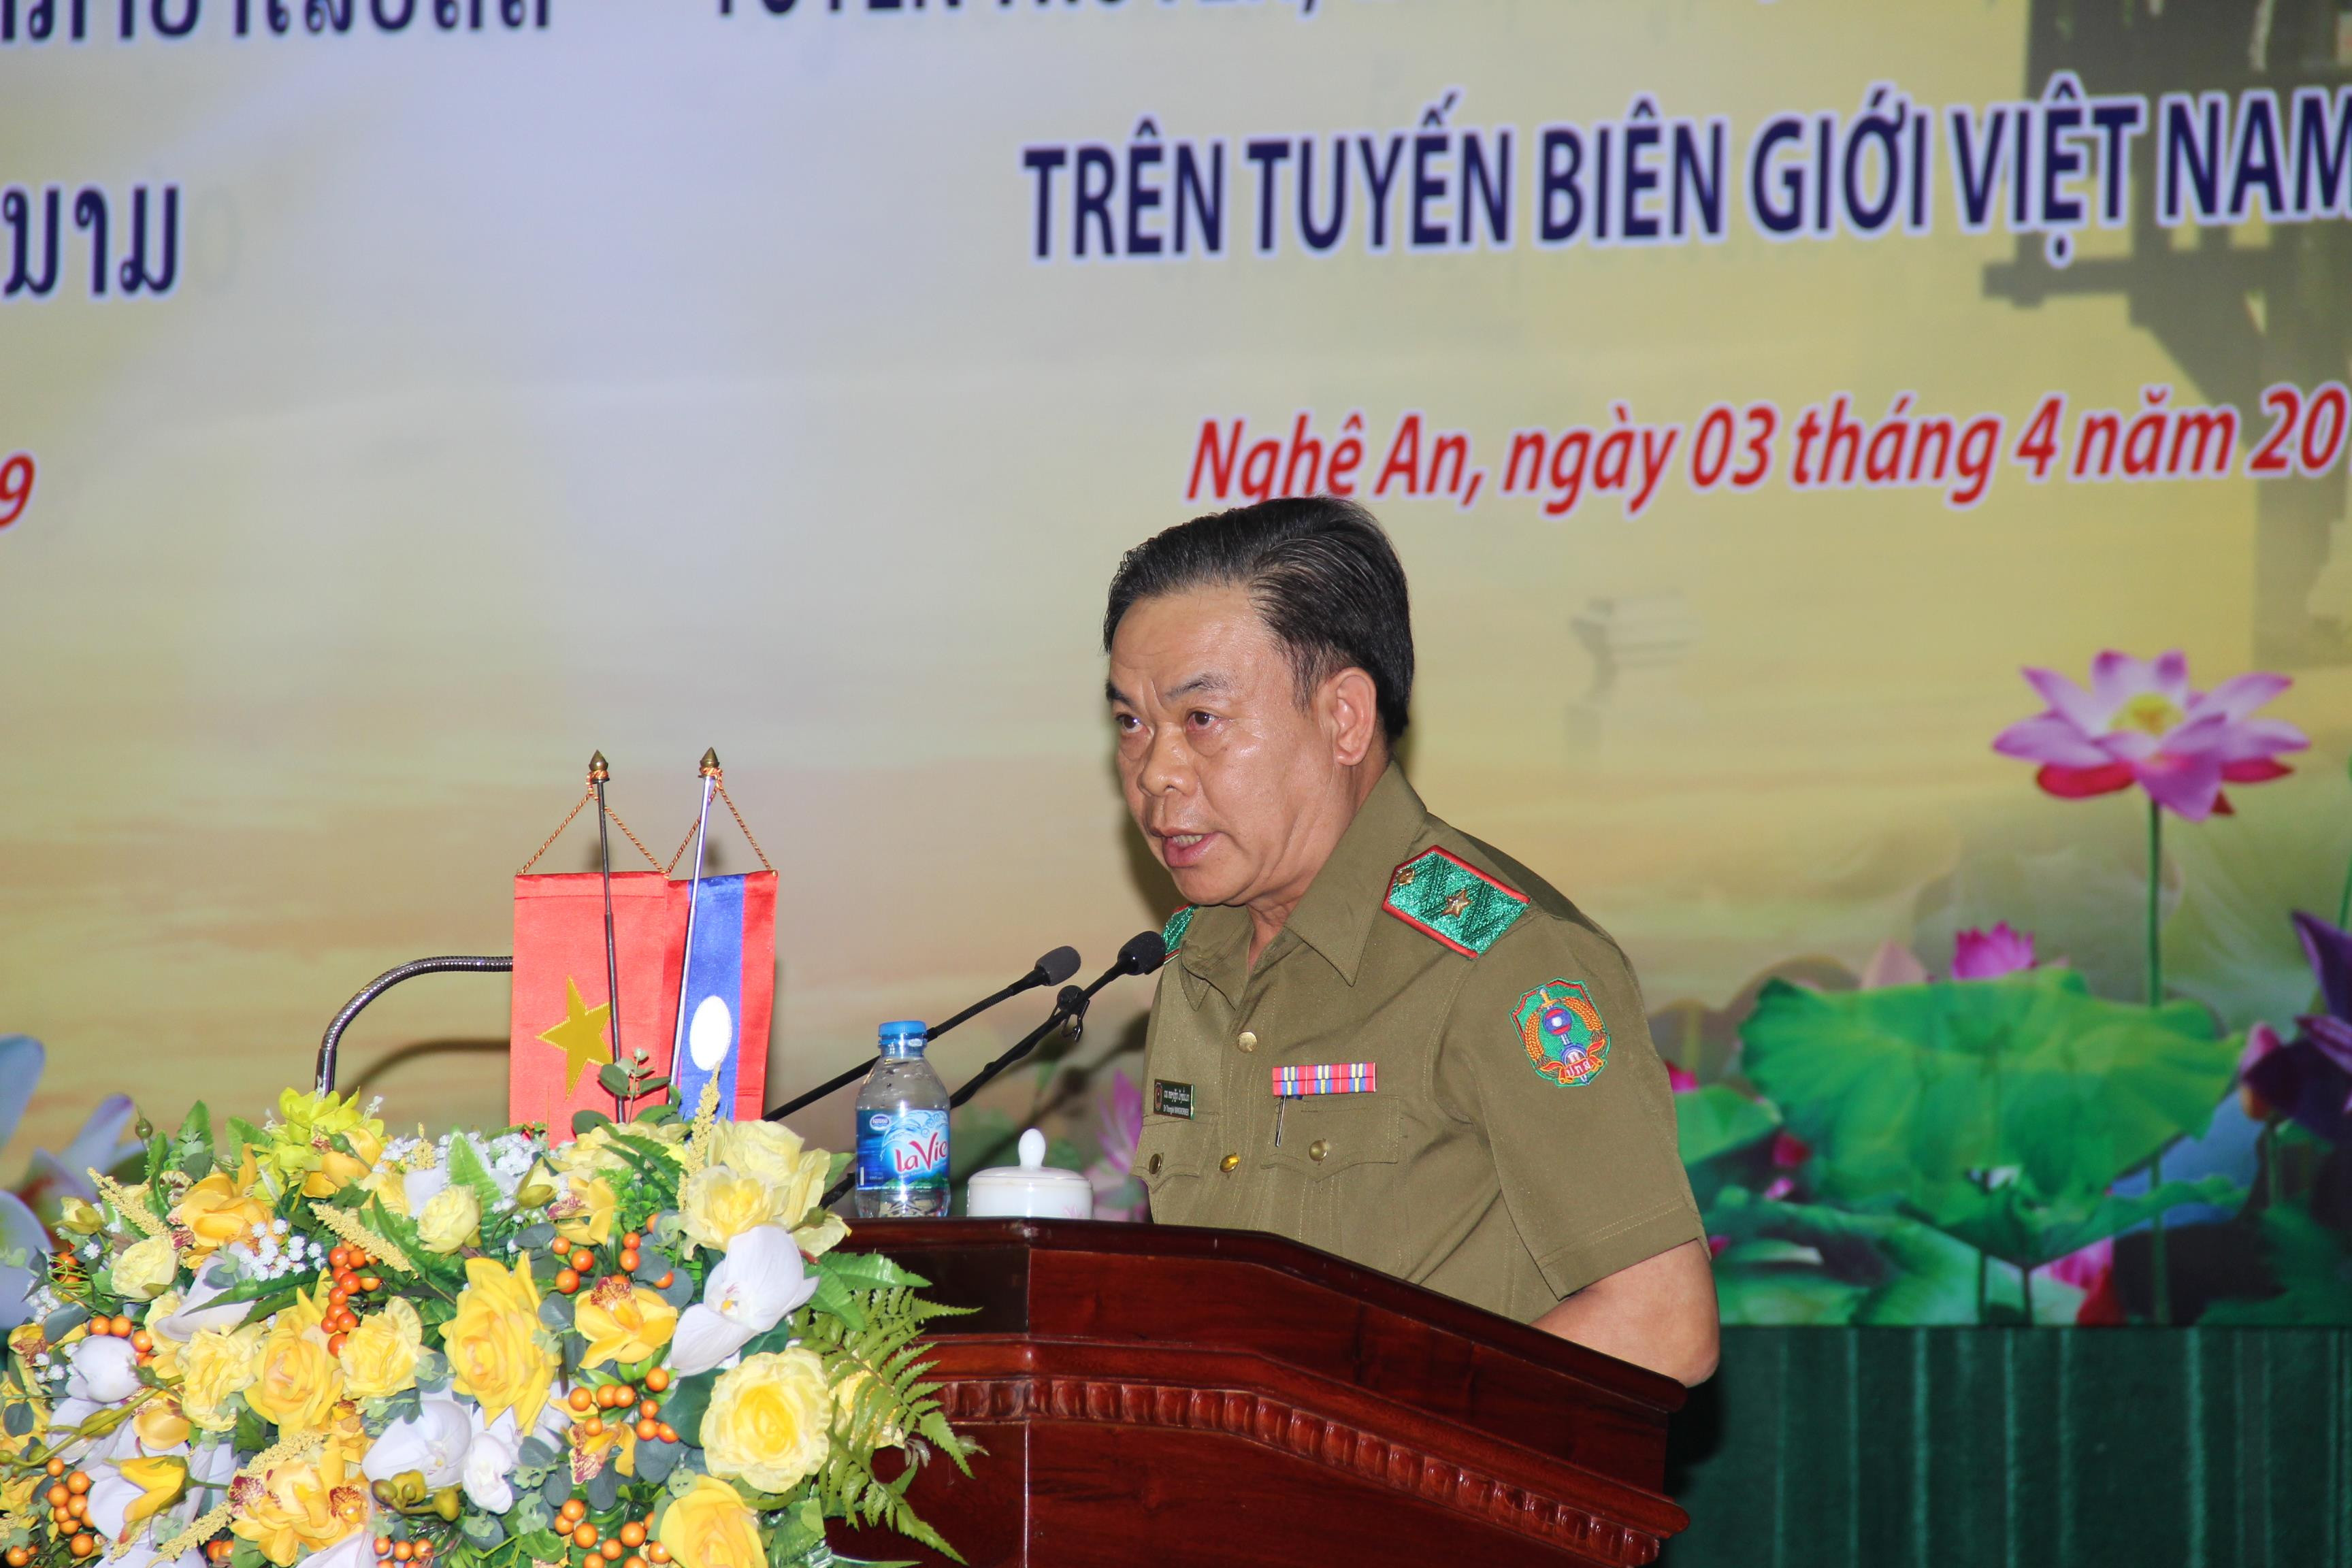 Phát biểu hưởng ứng đợt cao điểm được phát động tại hội nghị, Thiếu tướng Thoong Lếch Măn Nỏ Mệch. Ảnh: Hoài Thu